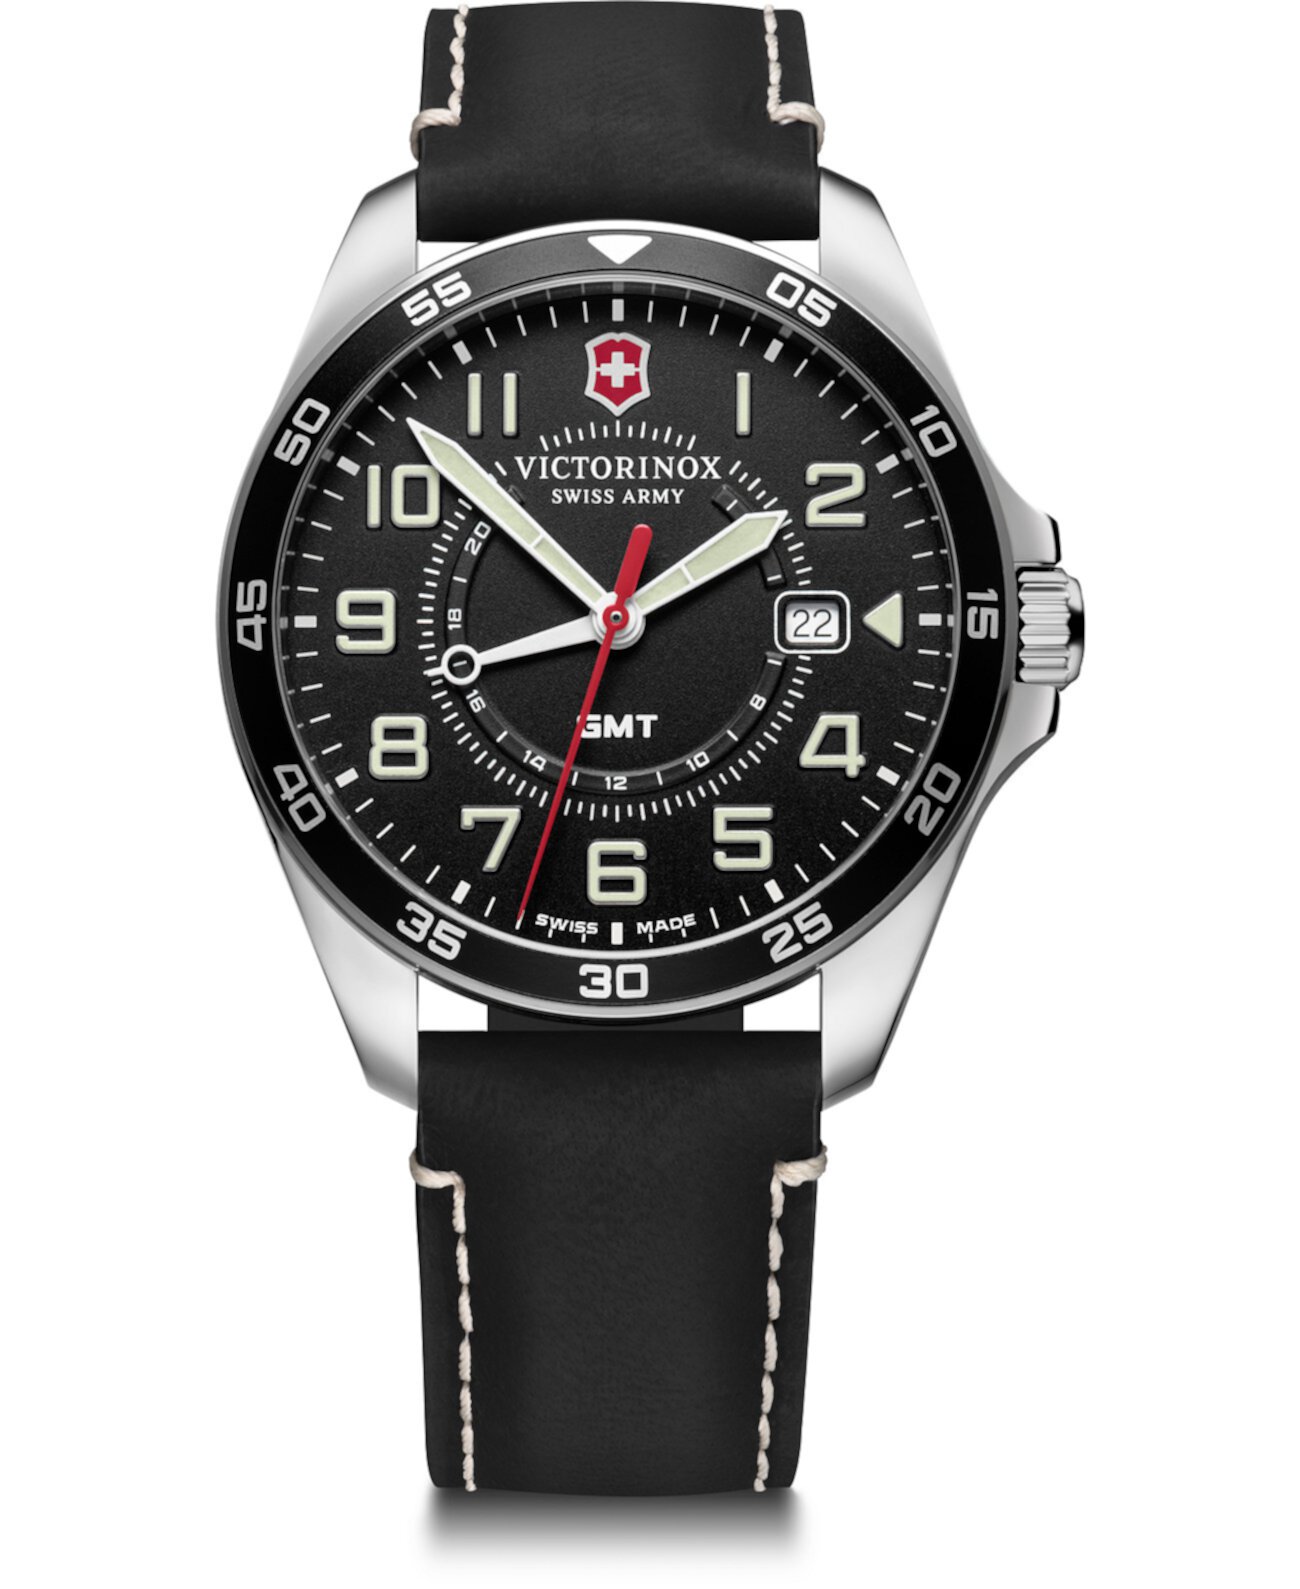 Мужские часы Fieldforce GMT с черным кожаным ремешком 42мм Victorinox Swiss Army